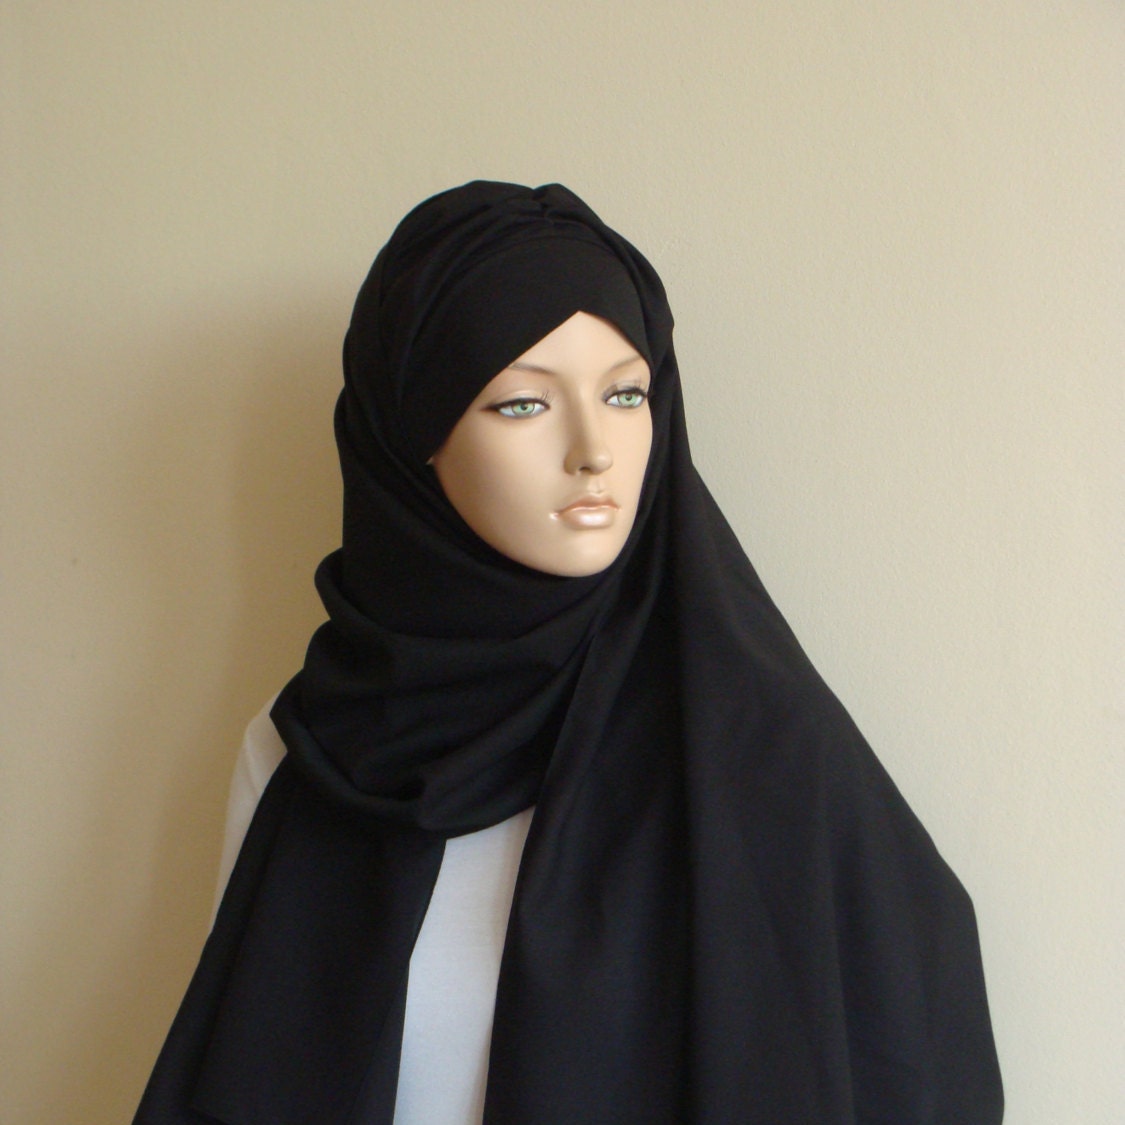 Stylish black Turban Hijab  ready  to wear  hijab  chapel